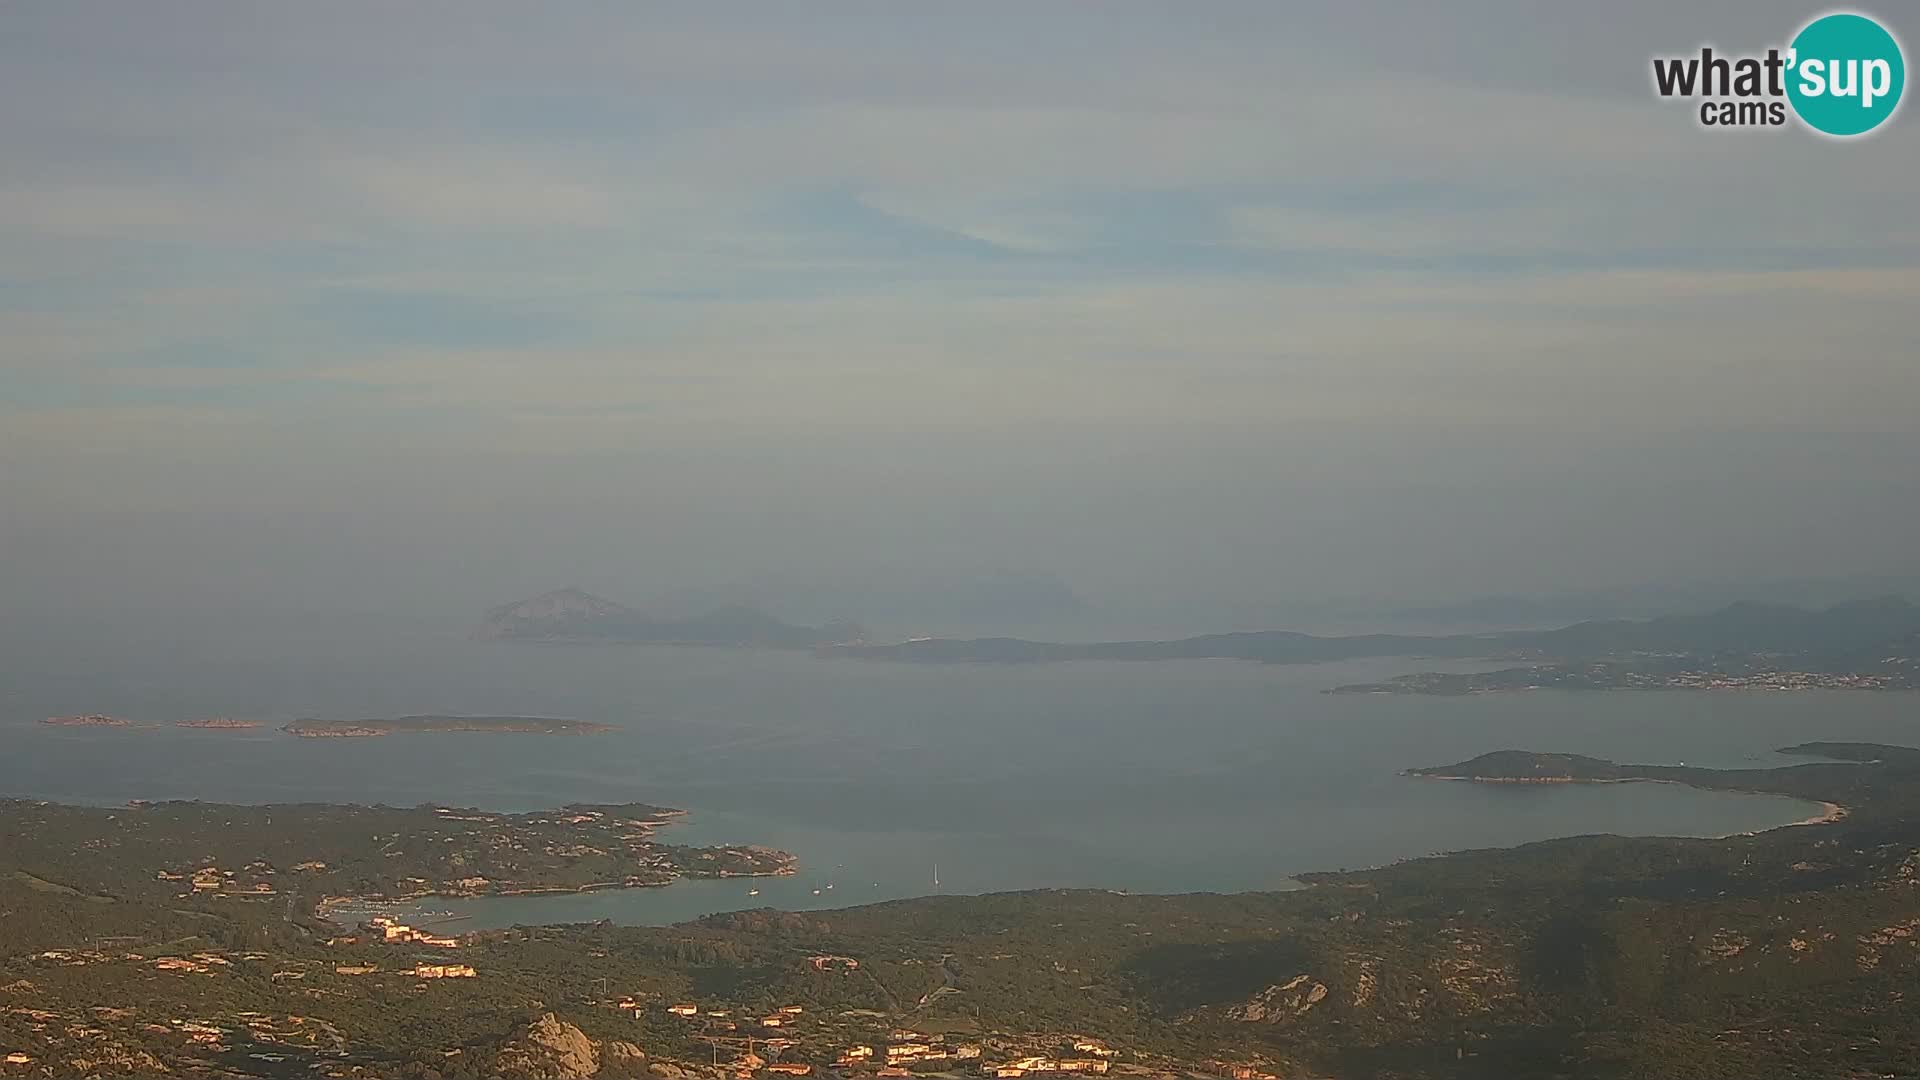 Monte Moro webcam Costa Smeralda panoramic view Sardinia